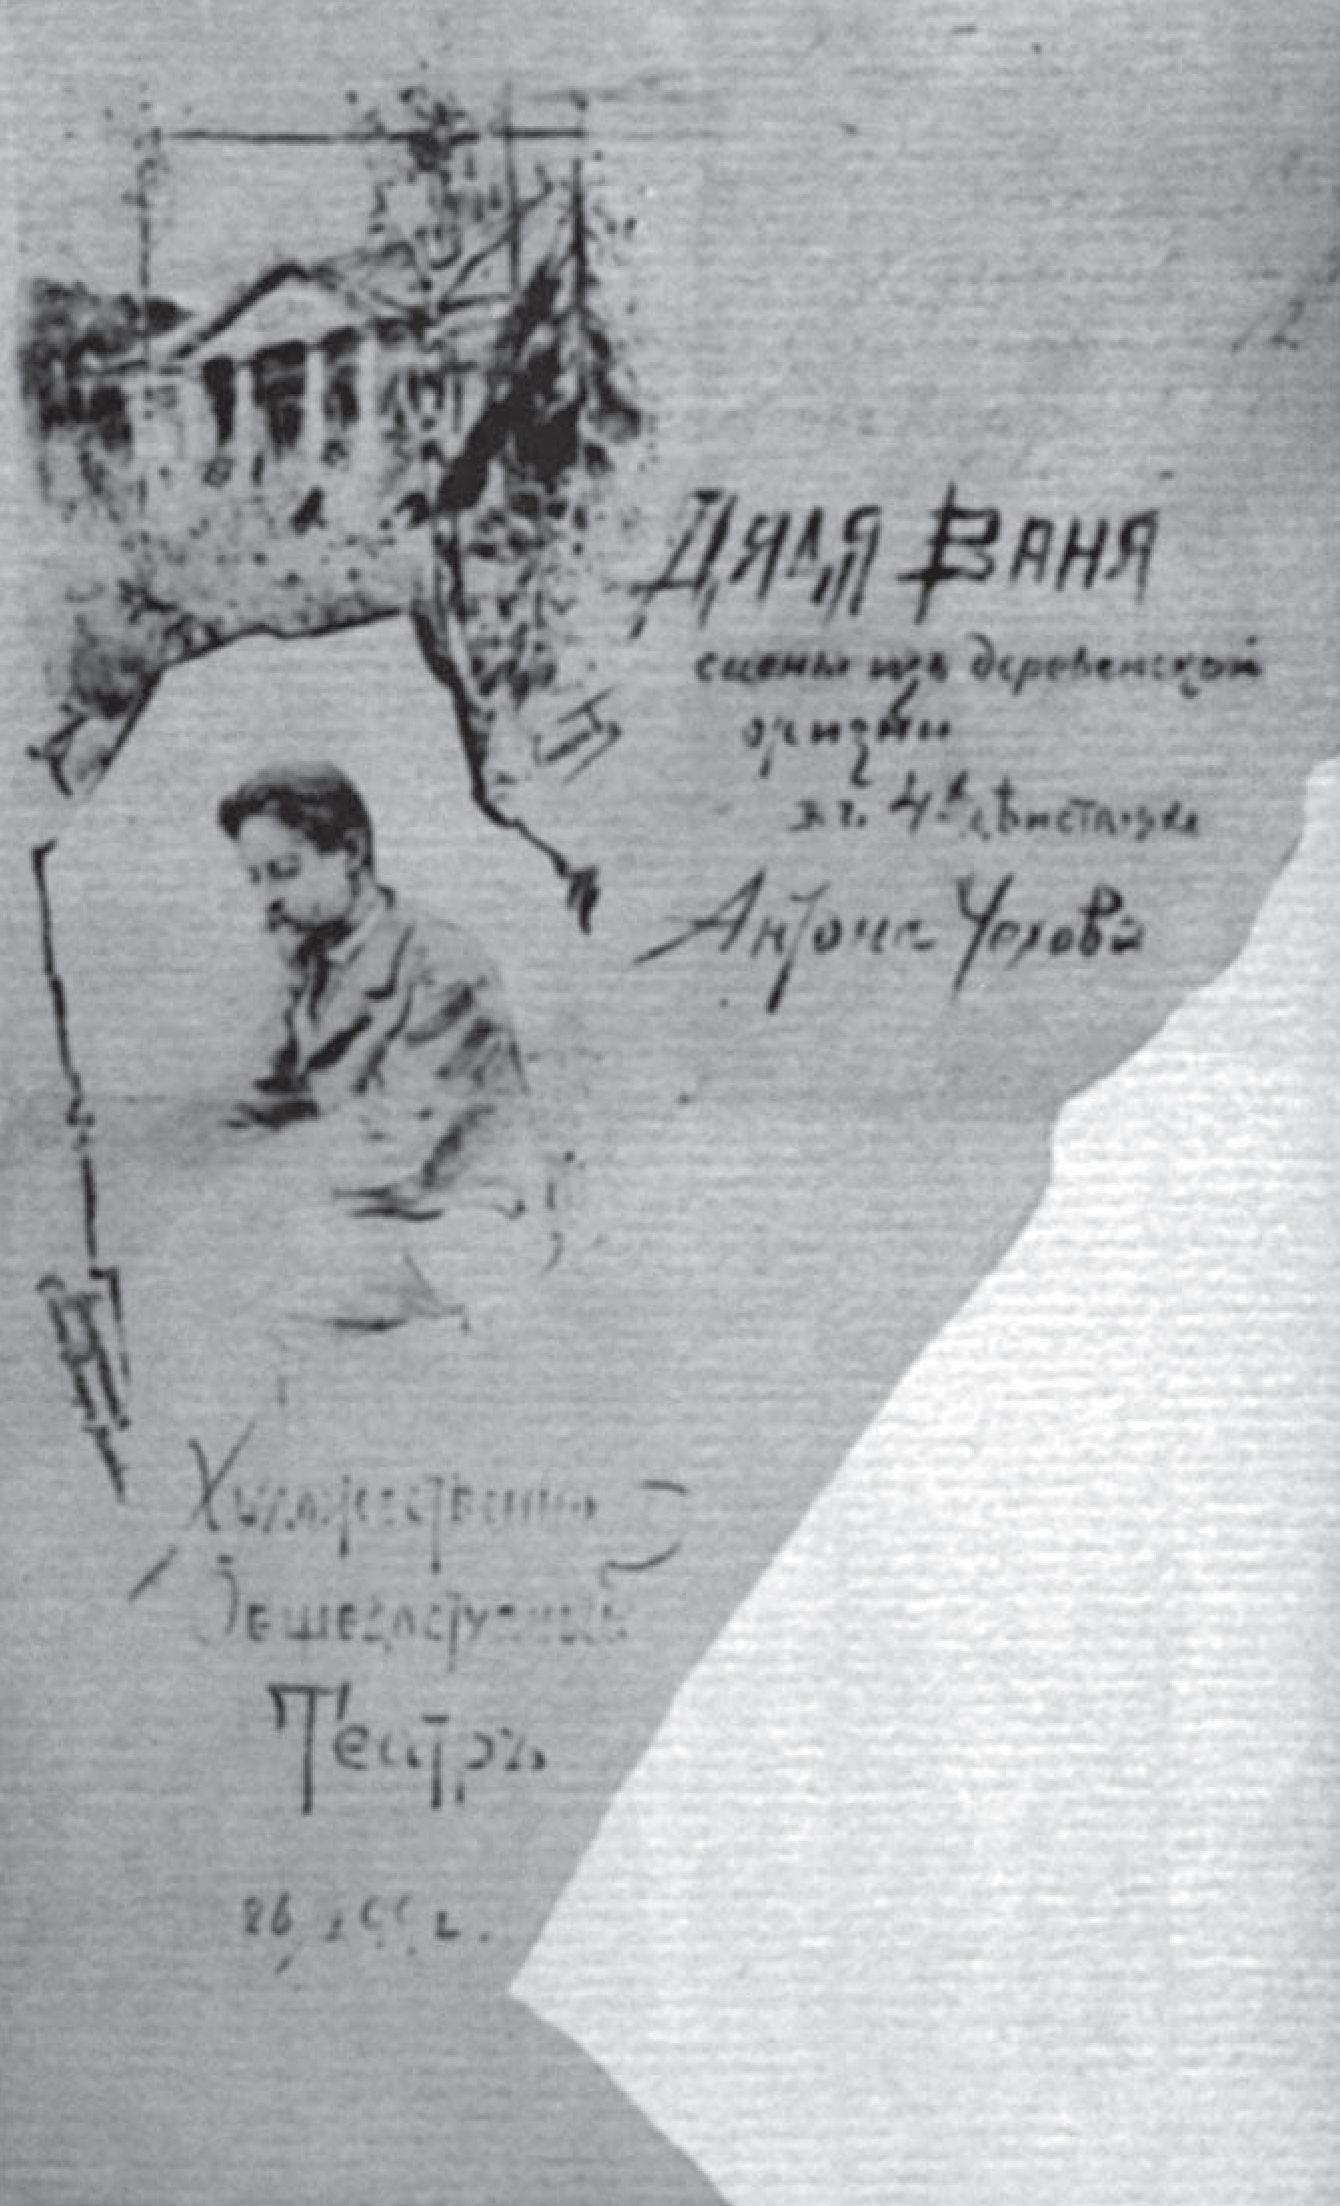 Программа спектакля «Дядя Ваня» в МХТ. 1899